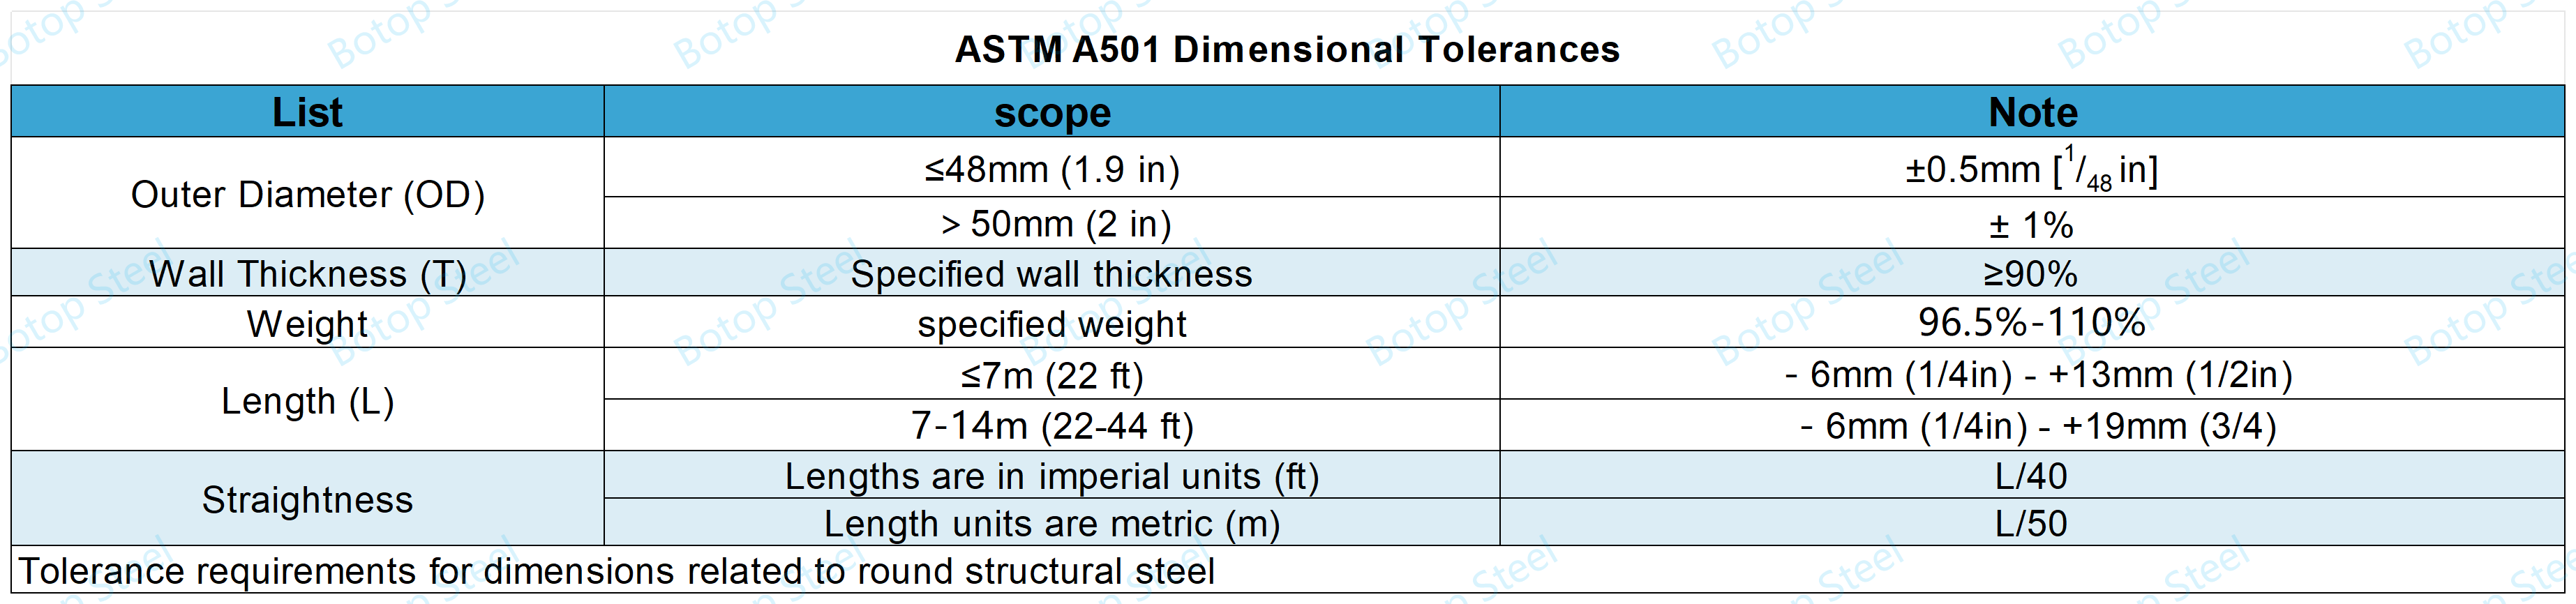 astm a501-Dimensional tolerances